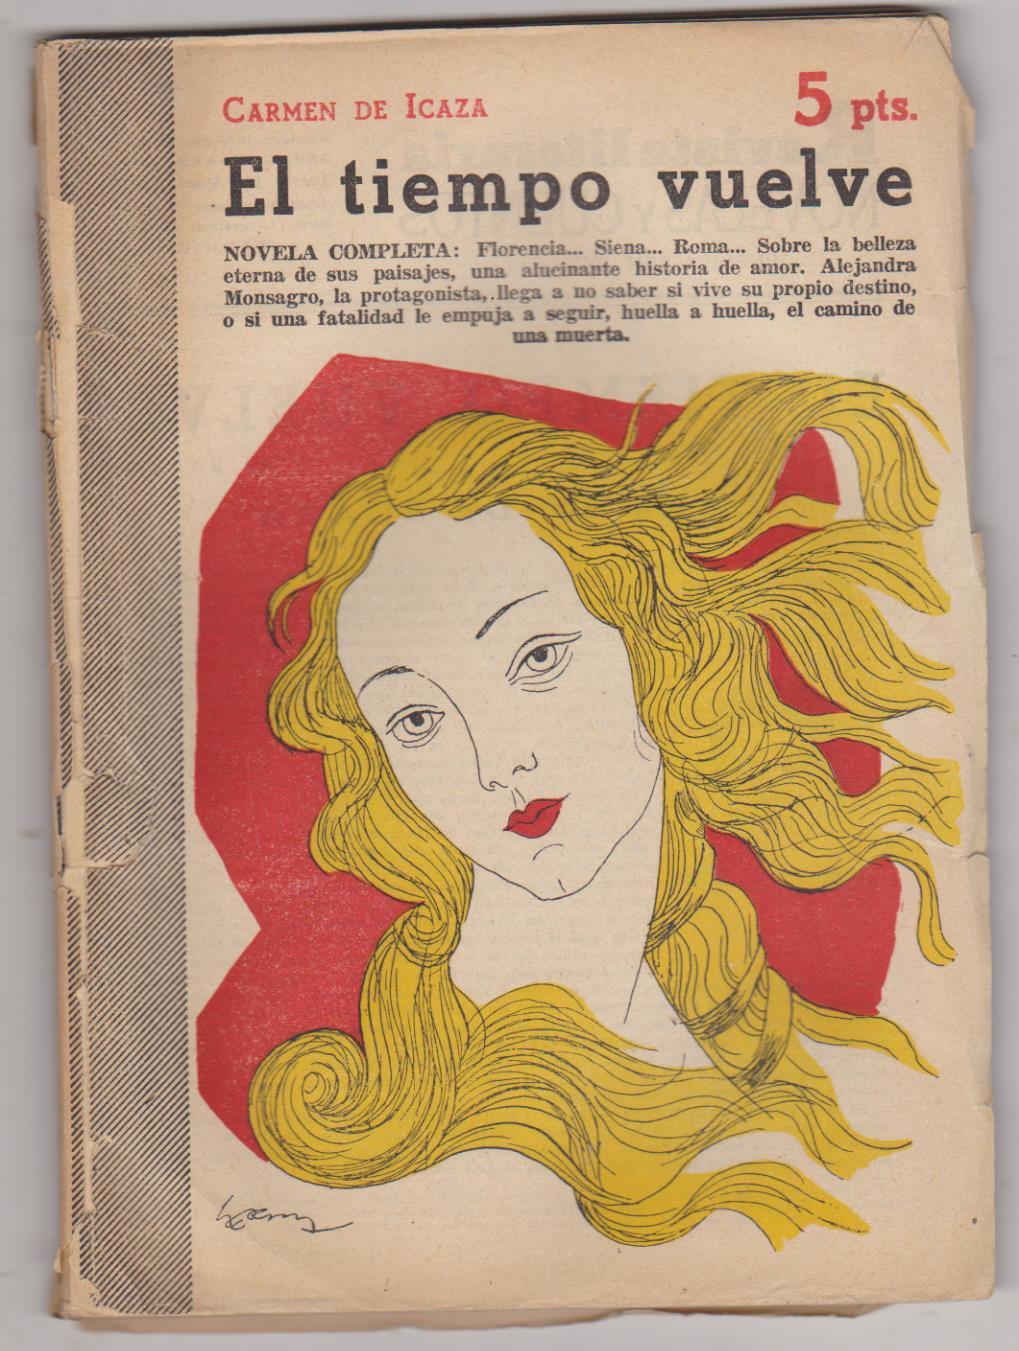 Revista Literaria nº 1083. Carmen de Icaza. El Tiempo vuelve. Año 1952